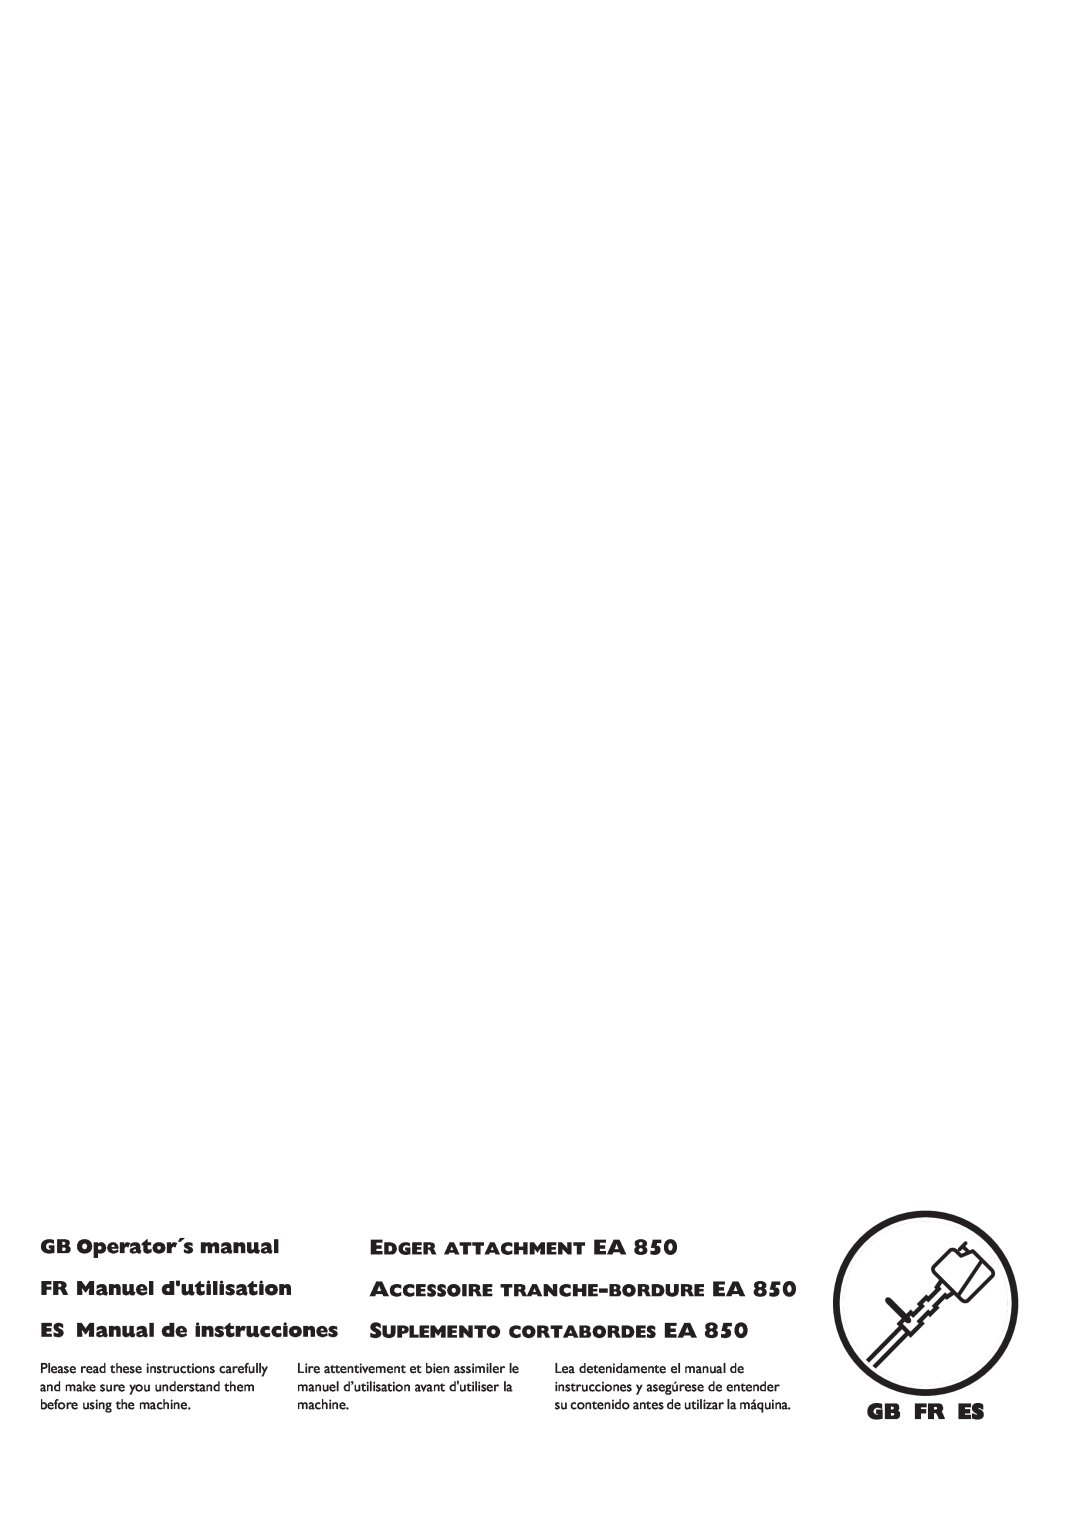 Husqvarna EA 850 manuel dutilisation Gb Fr Es, GB Operator´s manual, ES Manual de instrucciones SUPLEMENTO CORTABORDES EA 